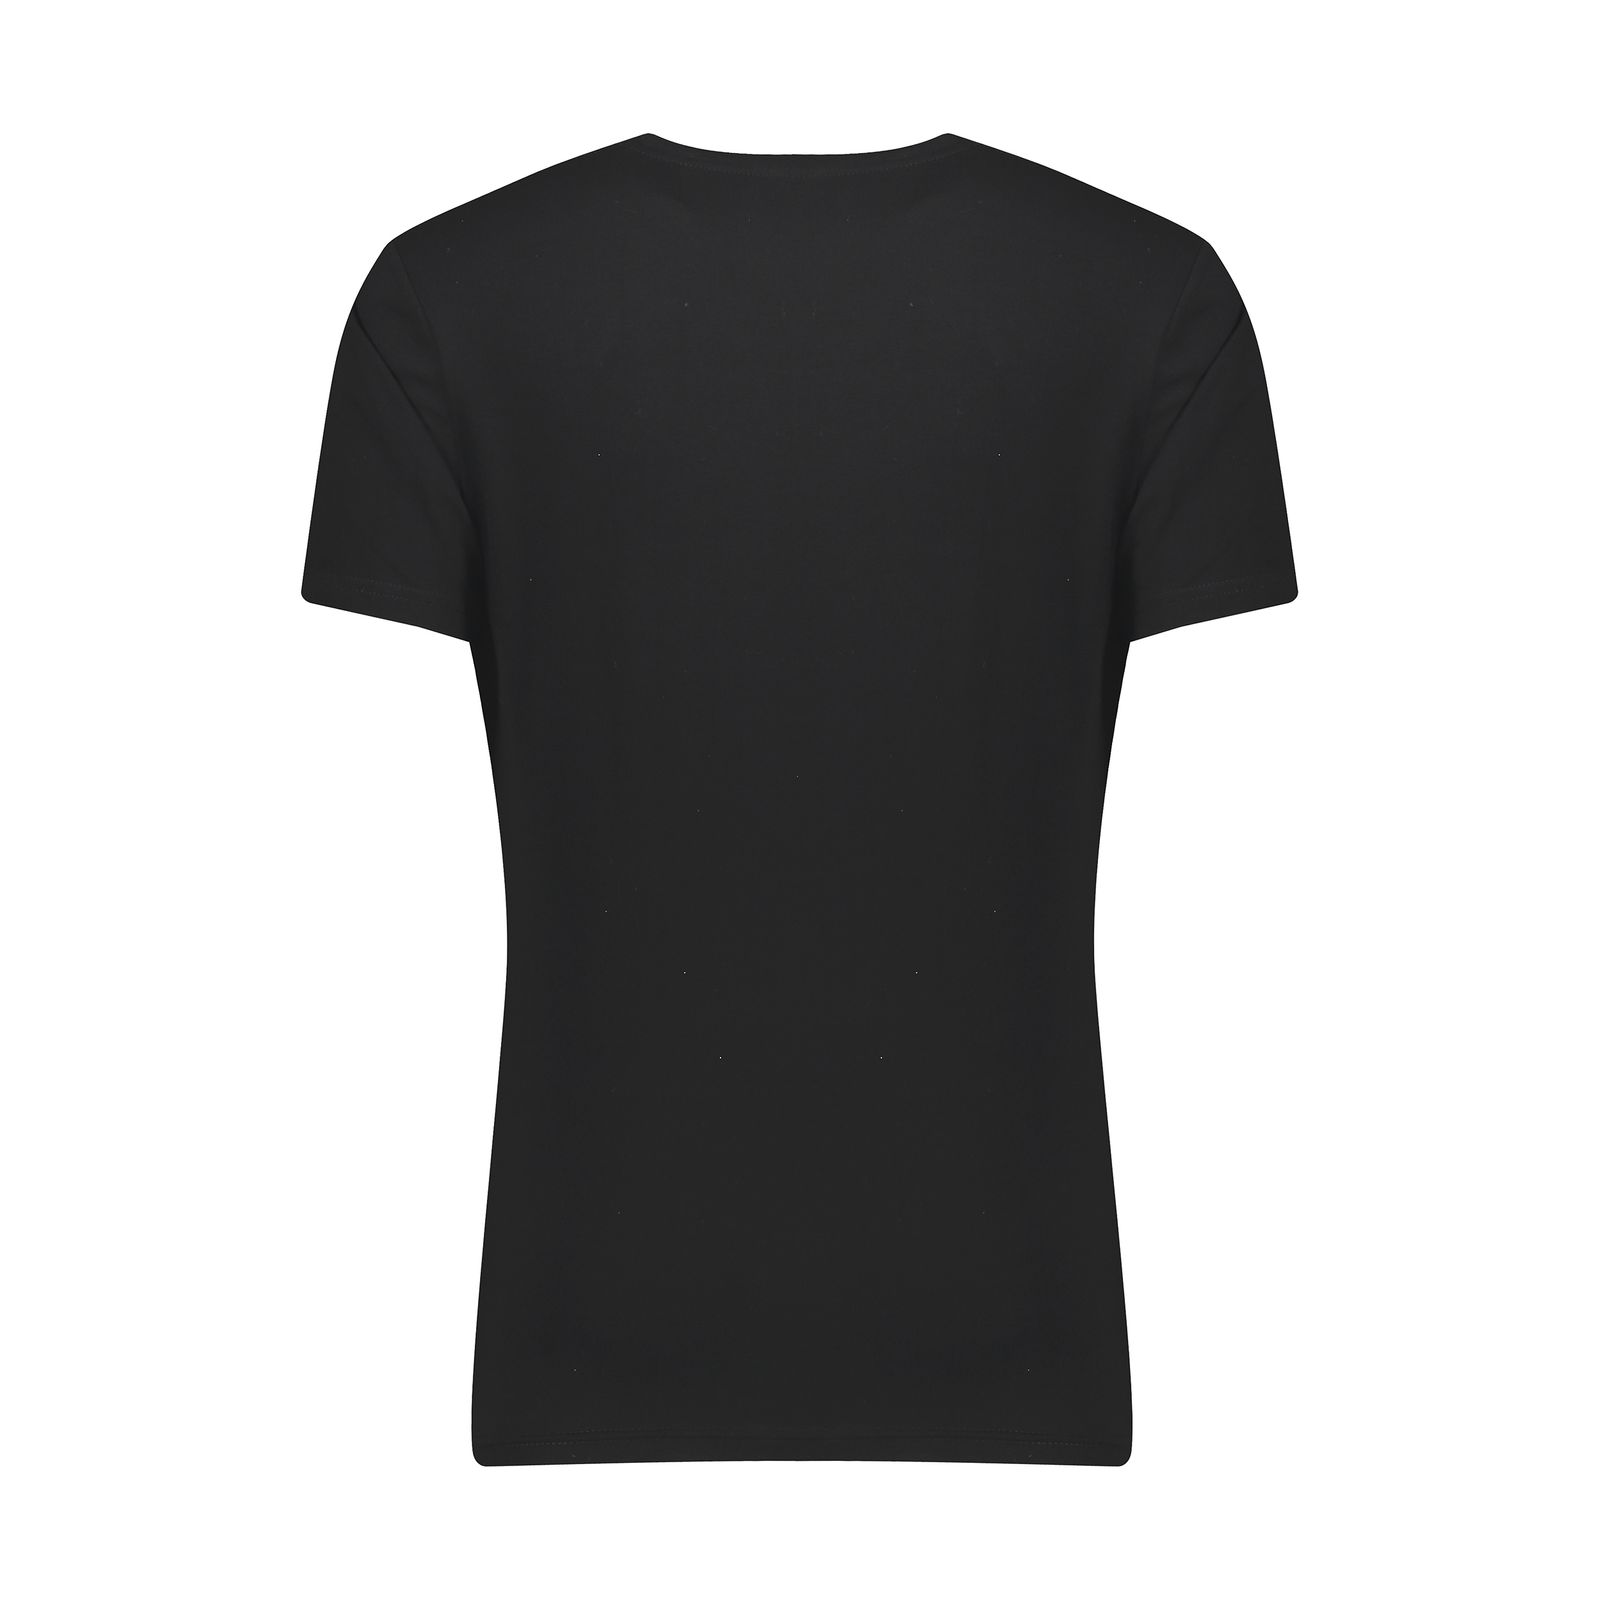 ست تی شرت و شلوار مردانه دل مد گروپ مدل 249101302 نخ پنبه رنگ مشکی -  - 10